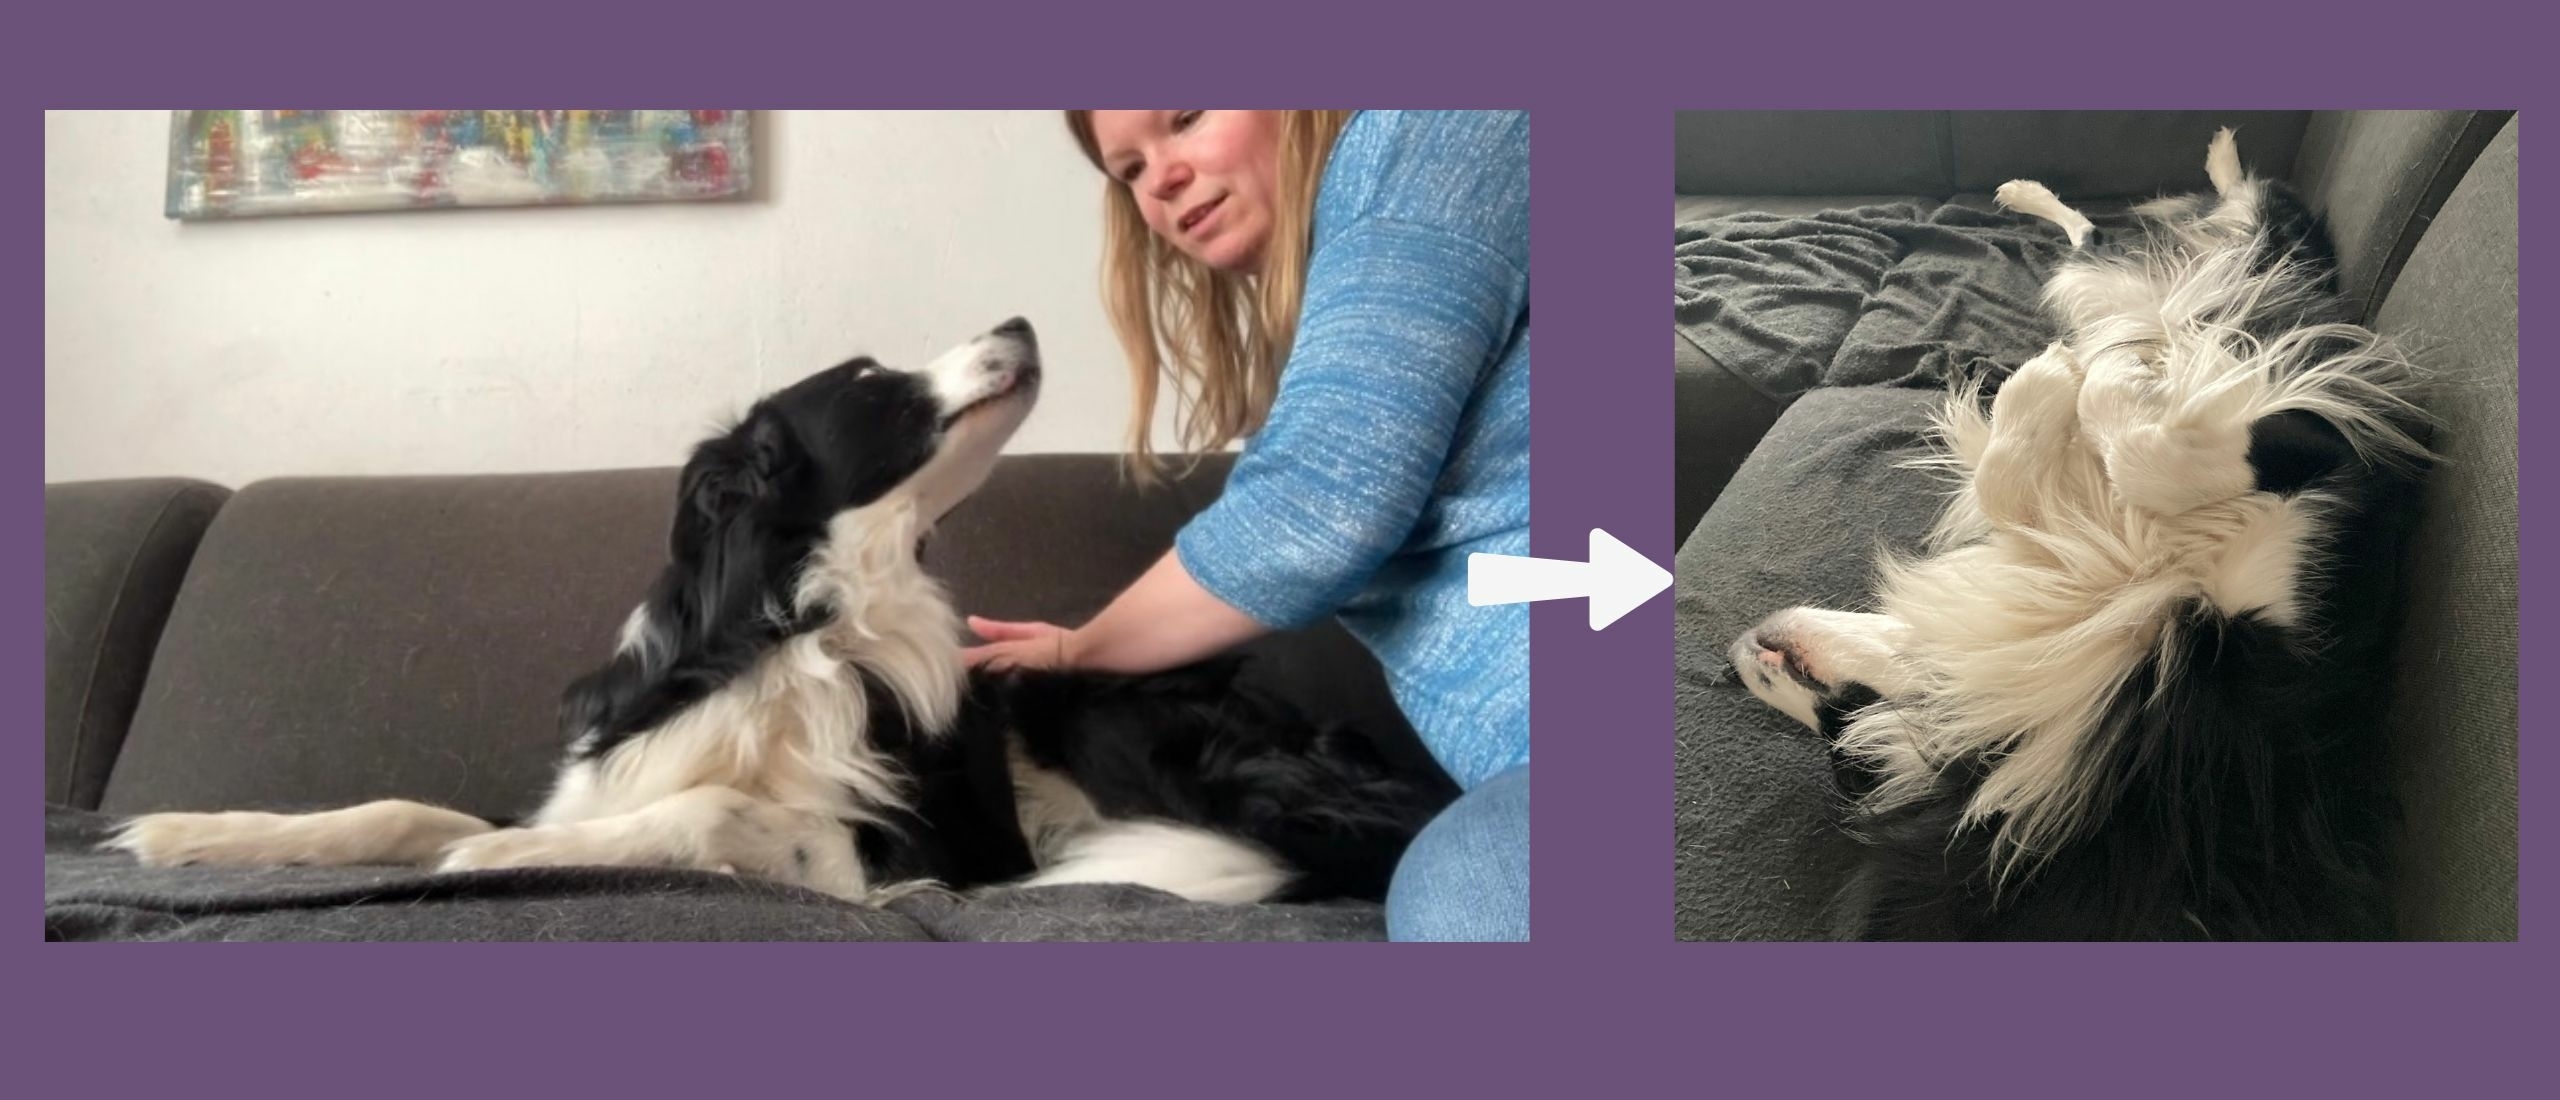 Hoelang duurt het geven van een hondenmassage?